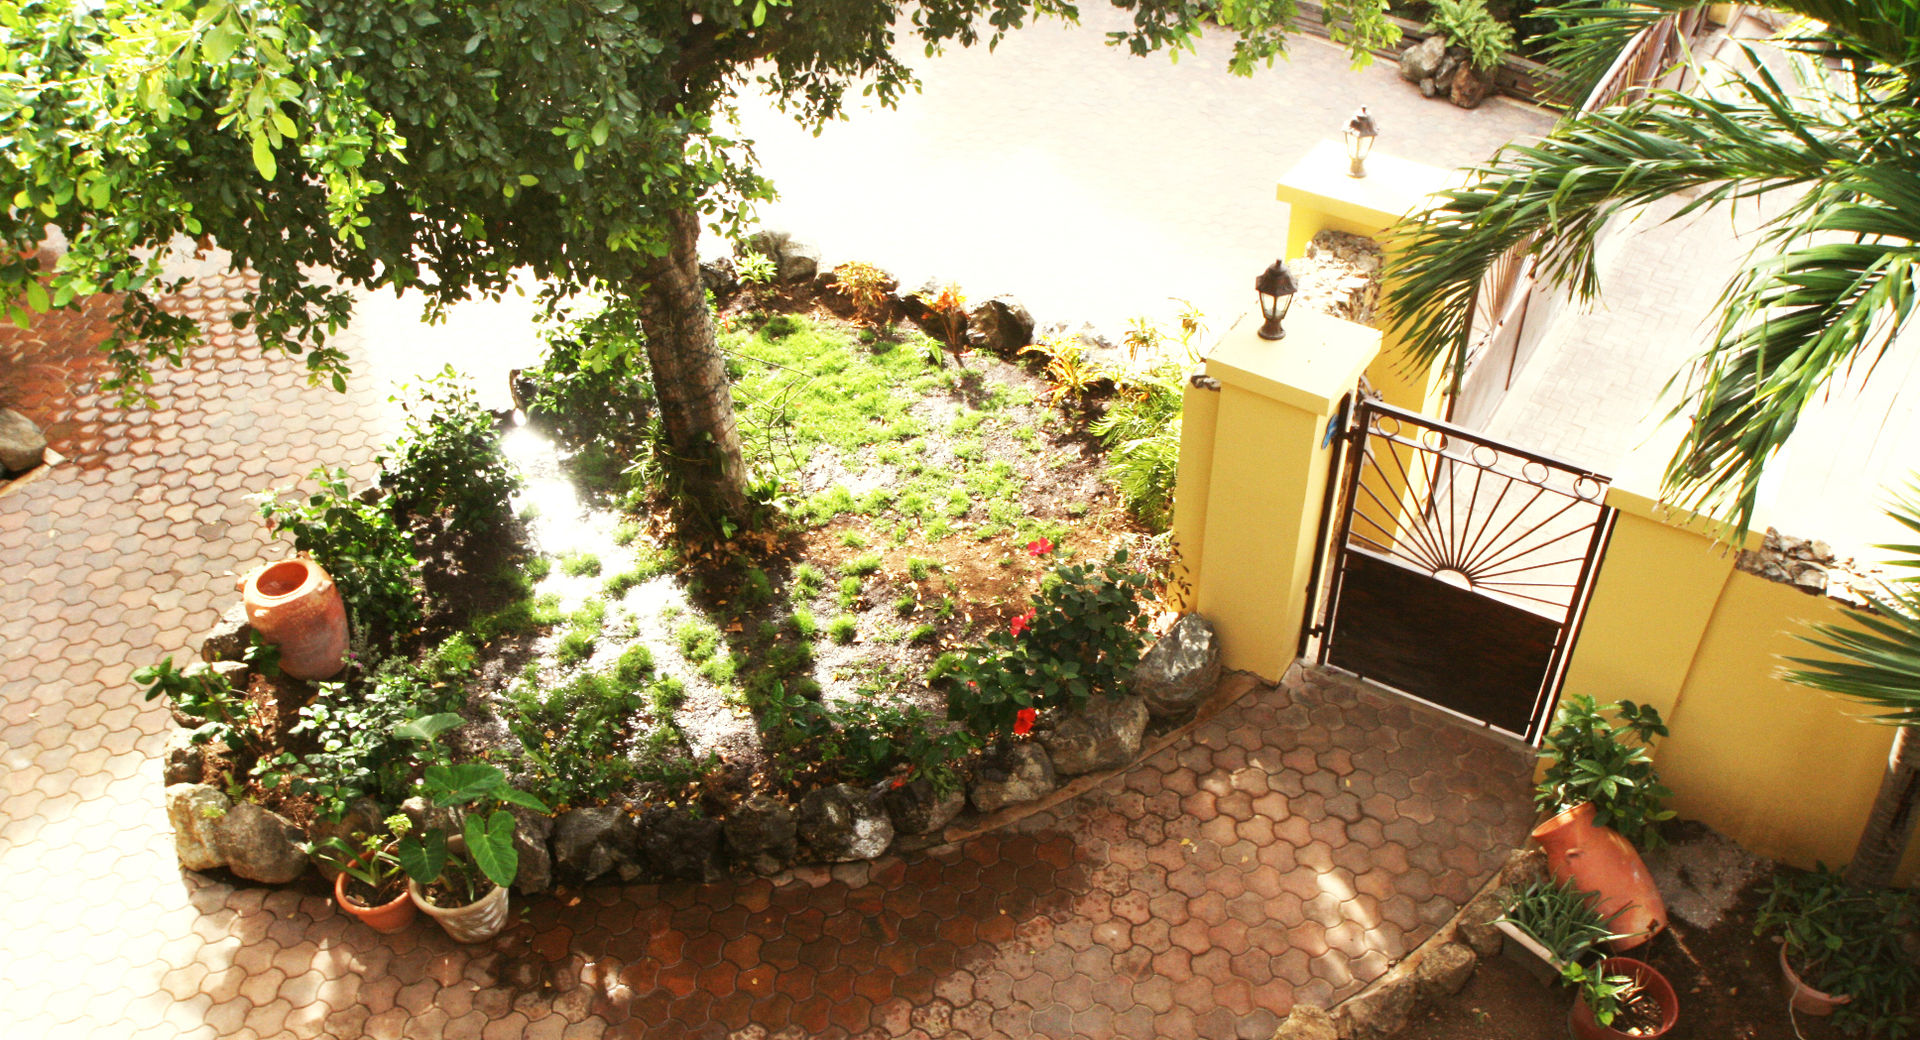 Casa Rokx, Willemstad Curaçao, architectenbureau Aerlant Cloin BNA architectenbureau Aerlant Cloin BNA Vườn phong cách nhiệt đới